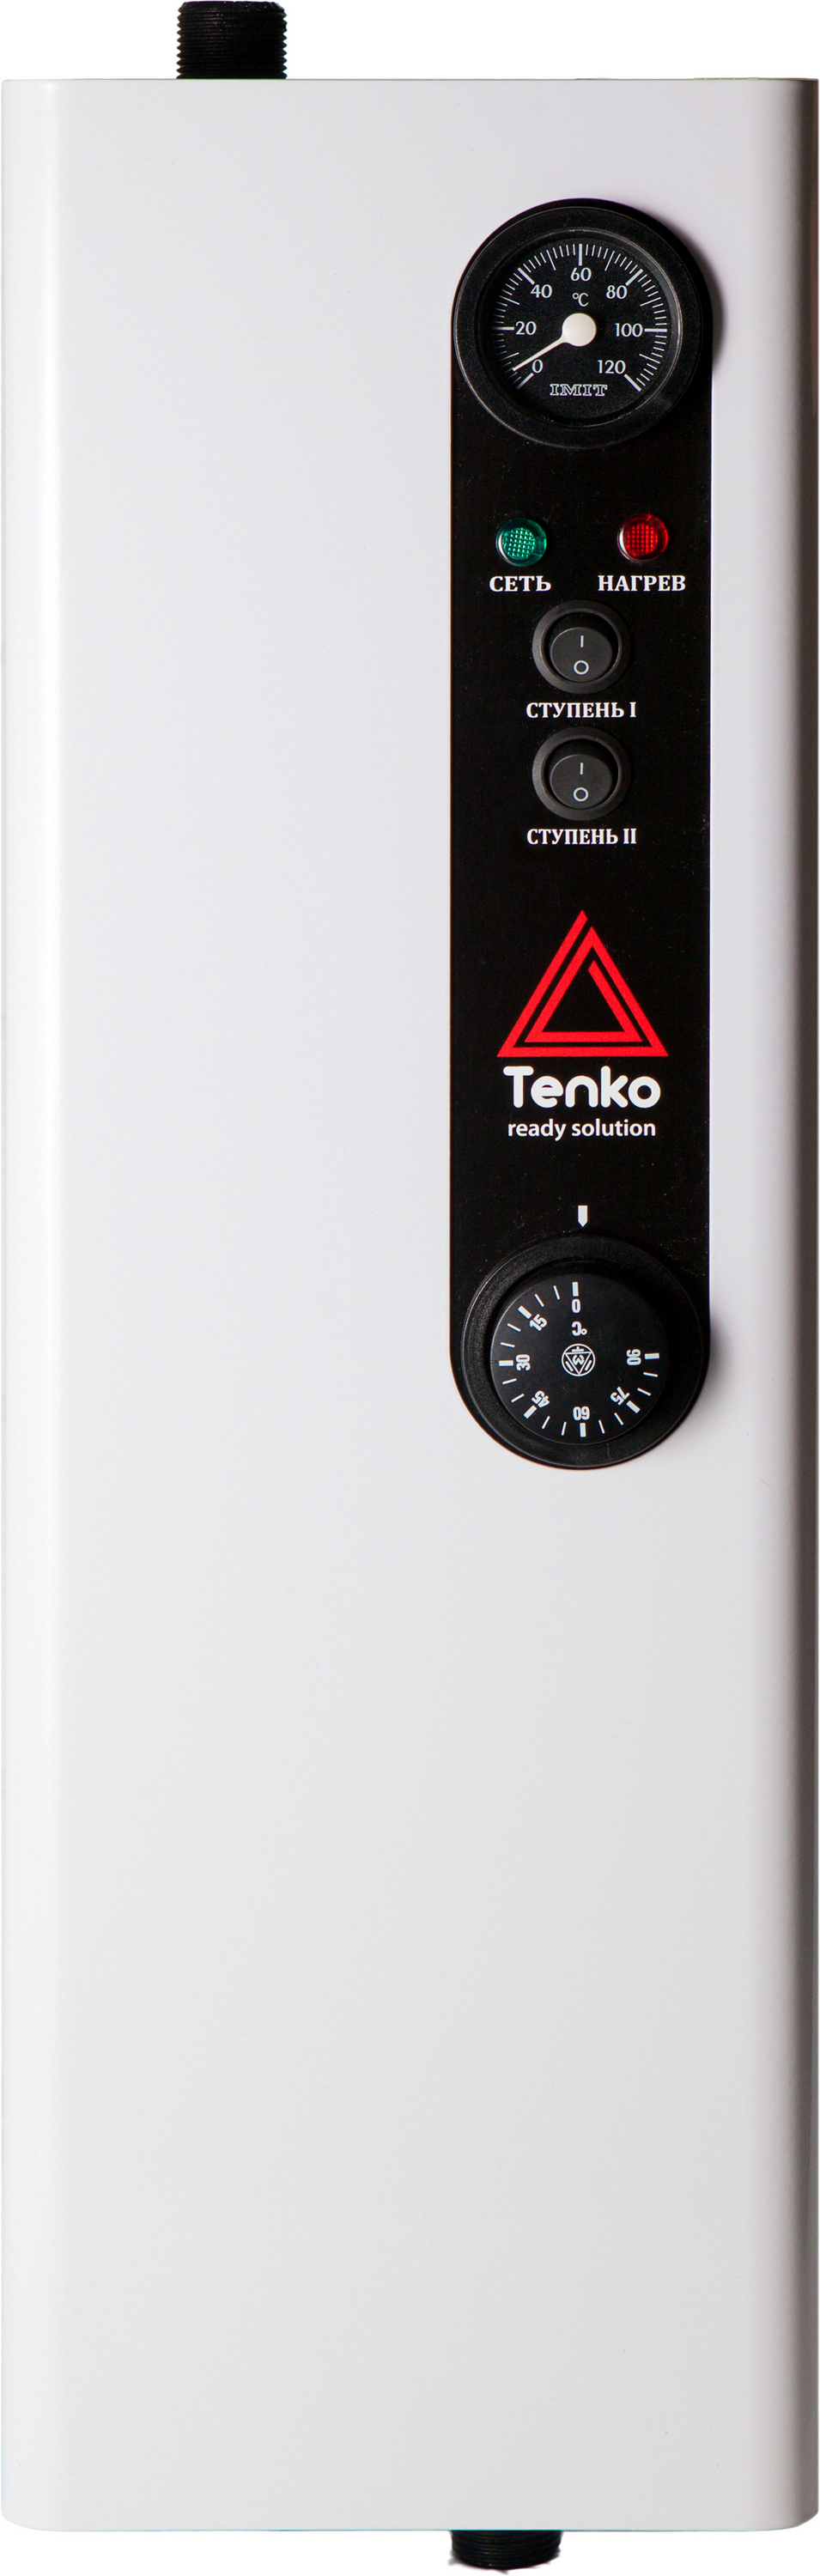 Характеристики трехфазный электрокотел на 380 вольт Tenko Эконом 18 380